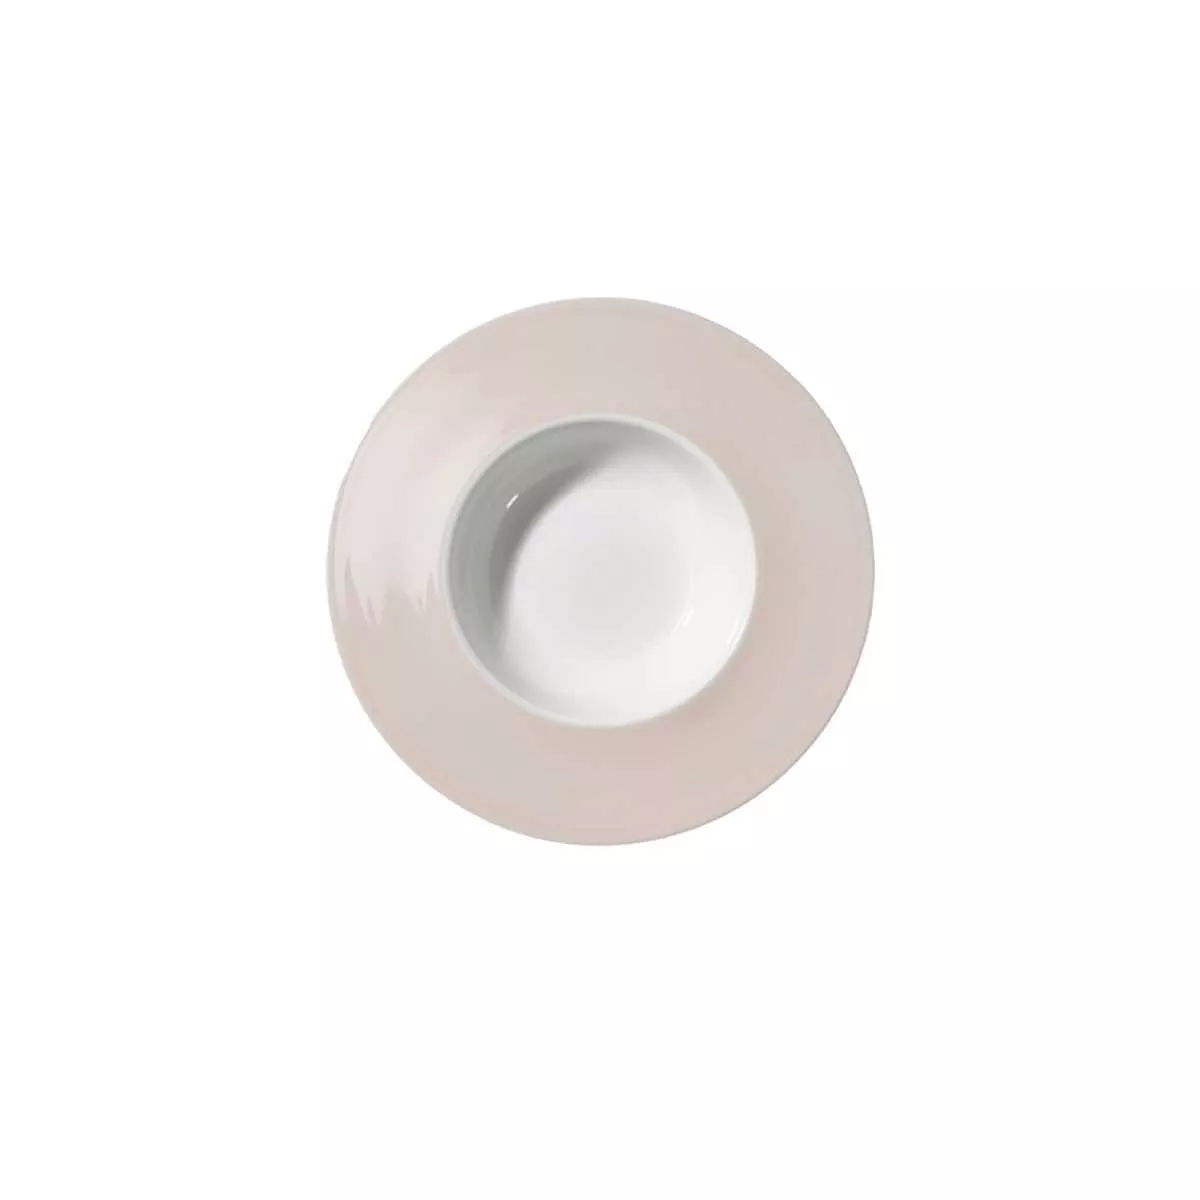 Тарелка Dibbern Pastell Powder Pink, диаметр 26 см (03 057 115 04) - Фото nav 1